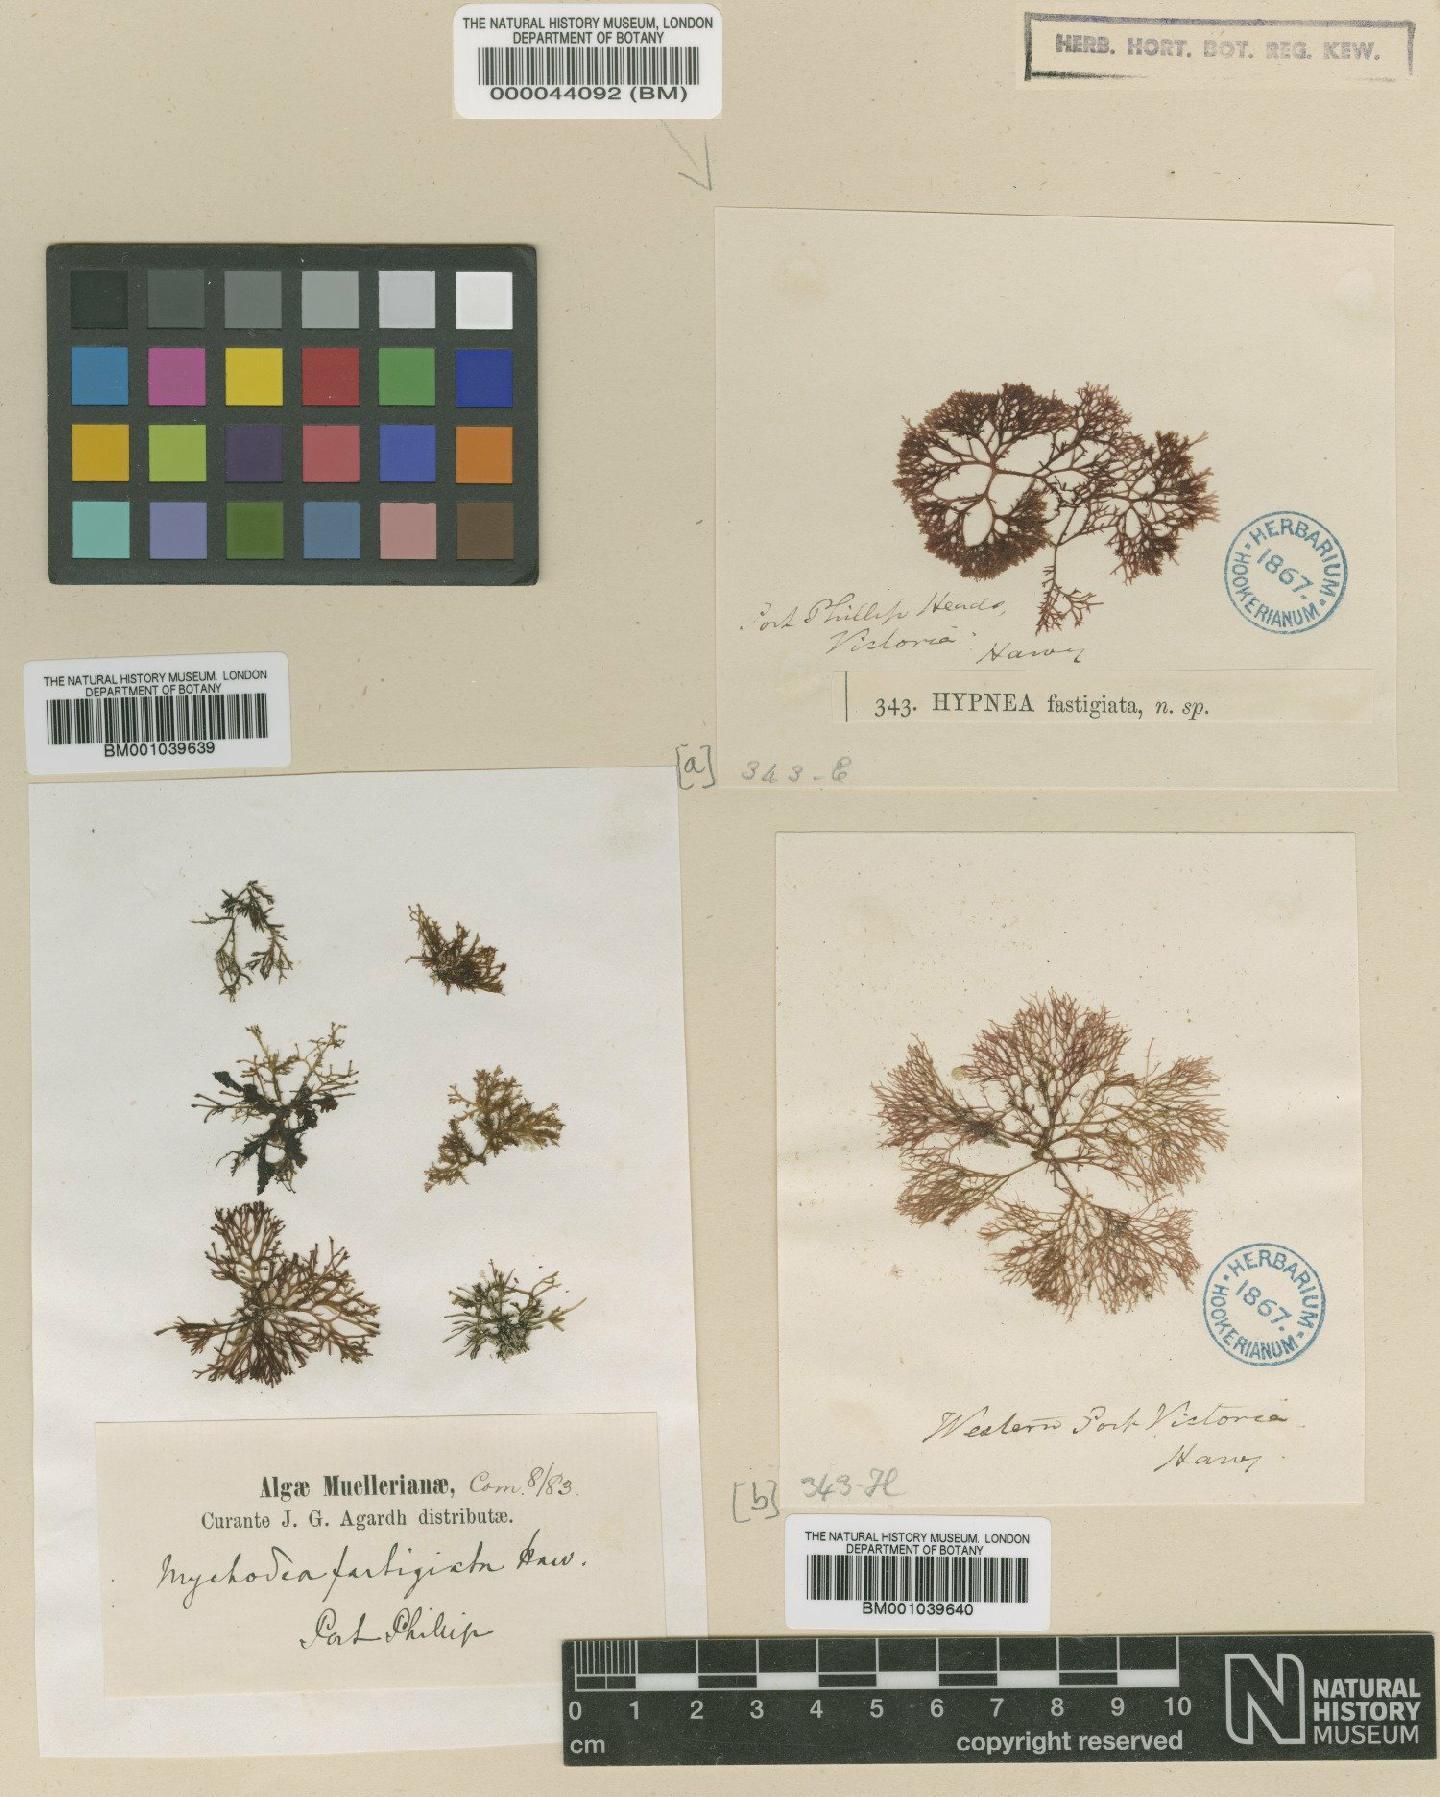 To NHMUK collection (Mychodea pusilla (Harv.) J.Agardh; NHMUK:ecatalogue:725541)